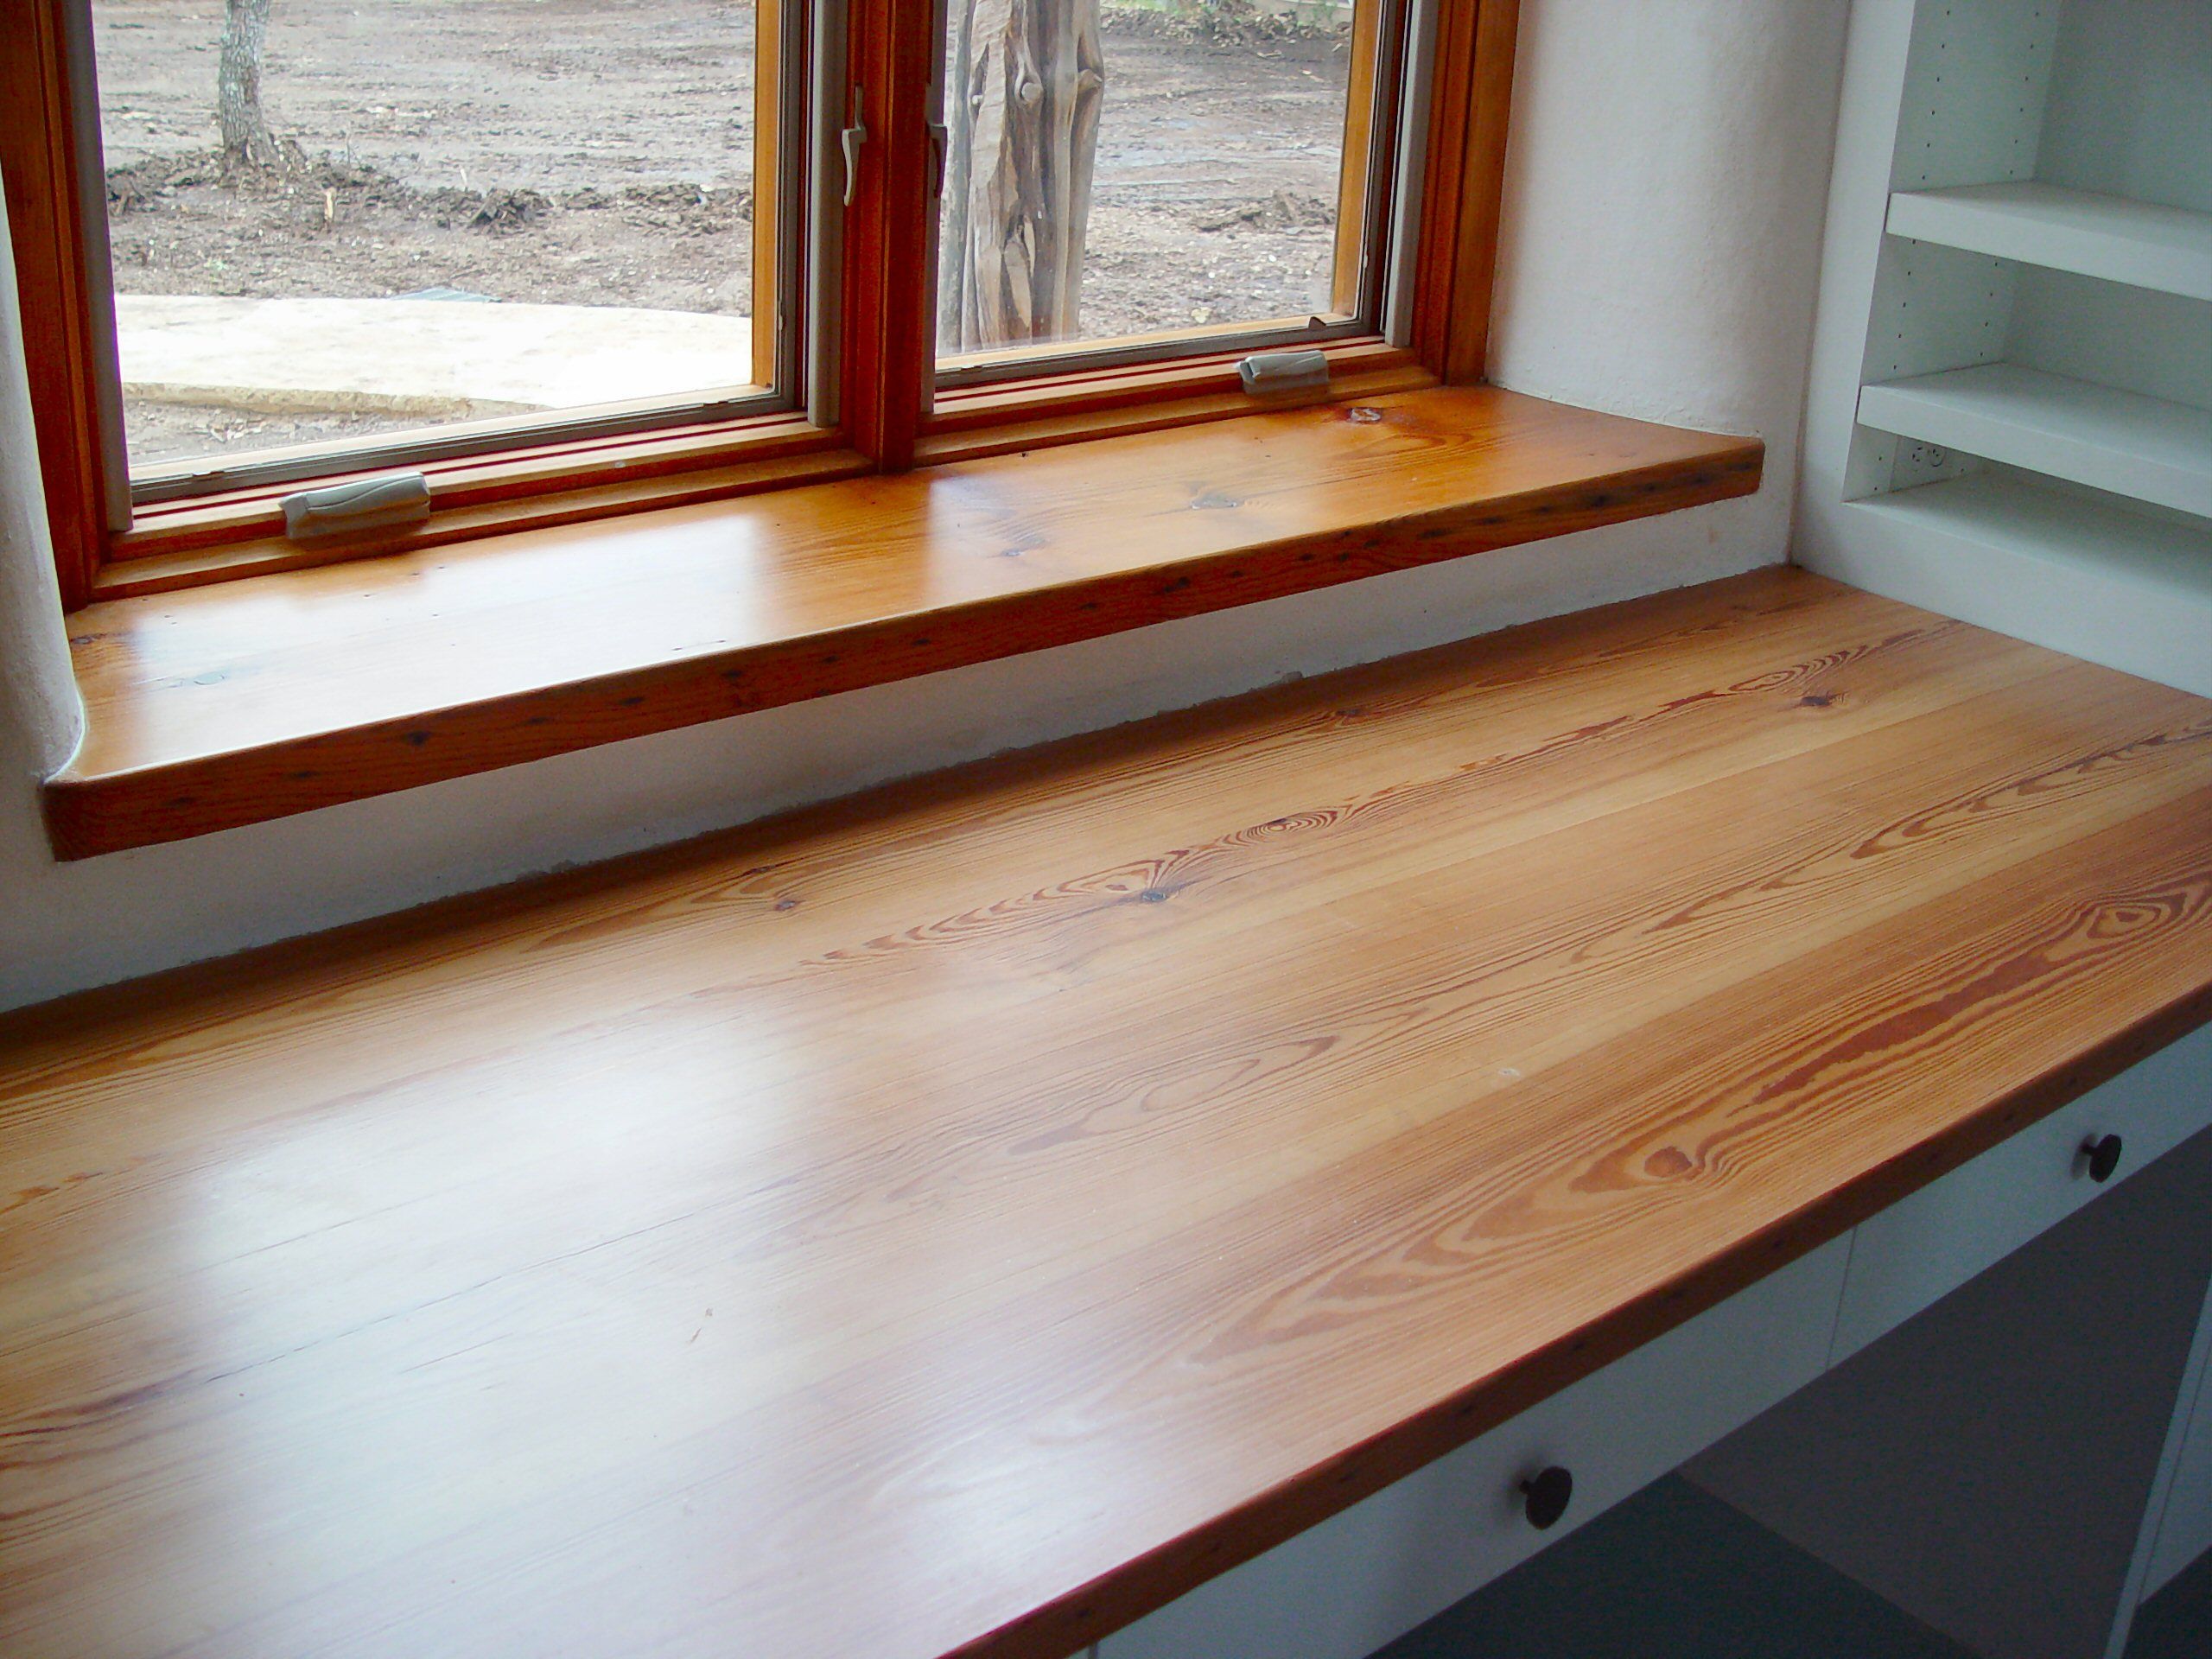 Reclaimed Longleaf Pine Wood Countertop Photo Gallery By Devos